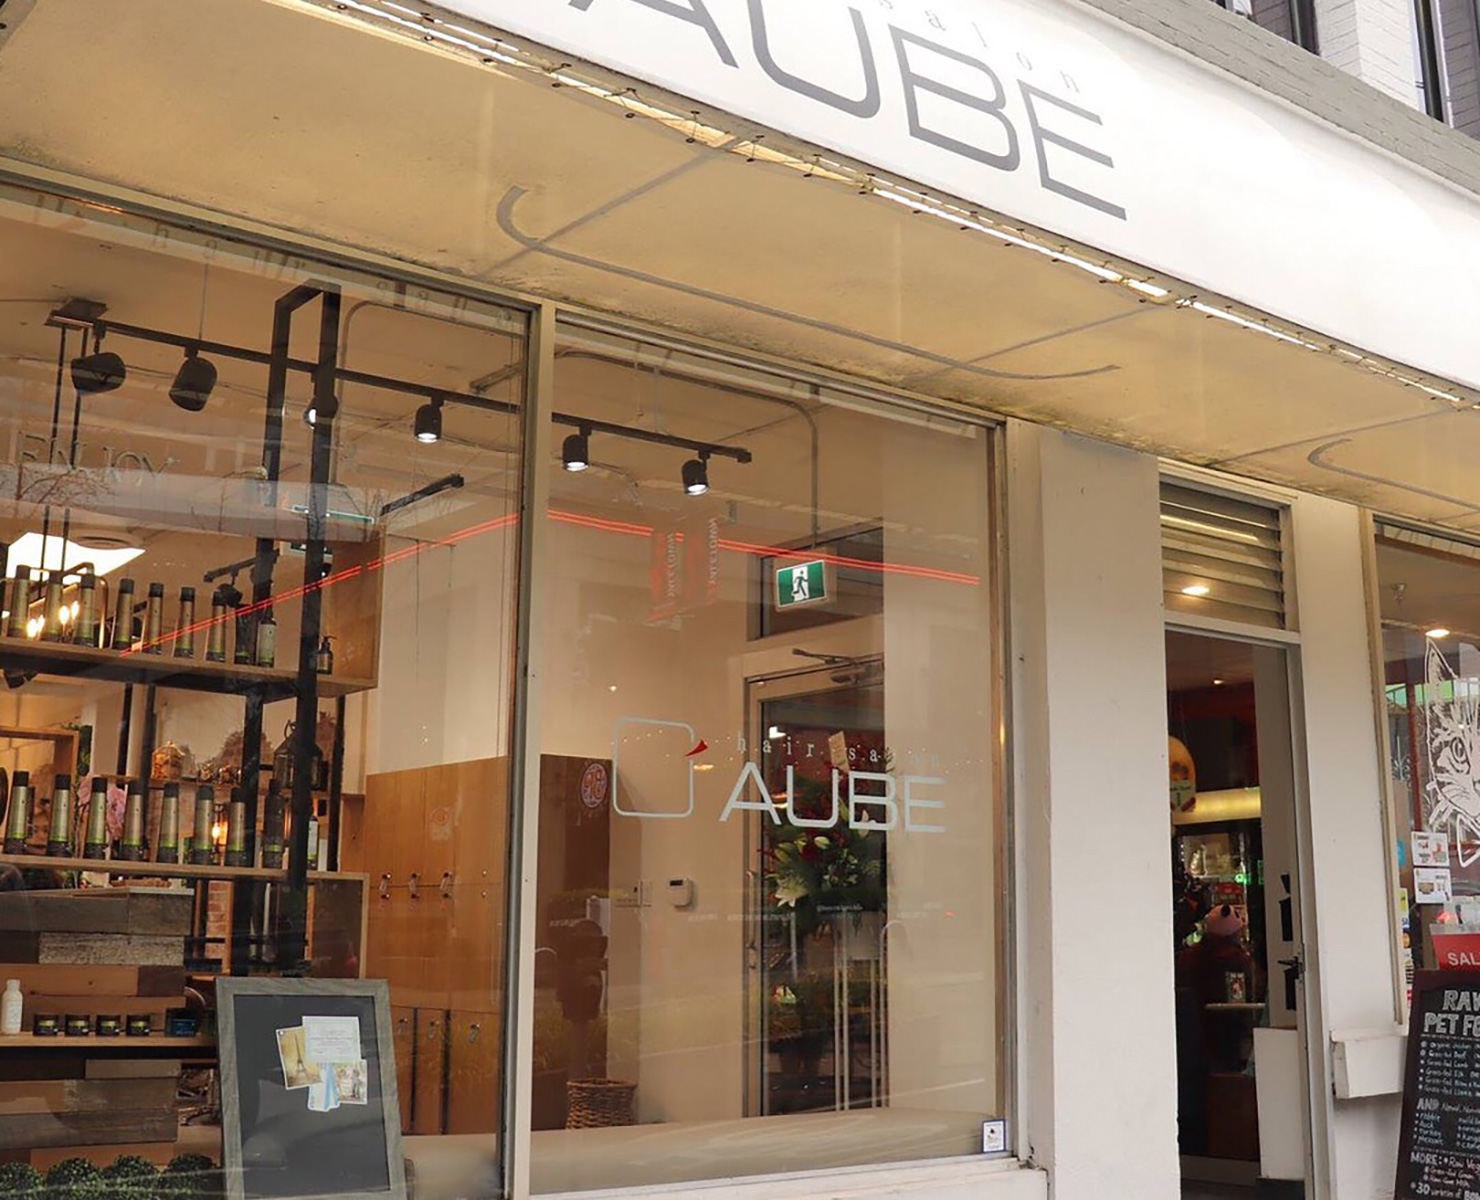 Location |AUBE hair salon - Japanese hair Salon in Vancouver,Cnada